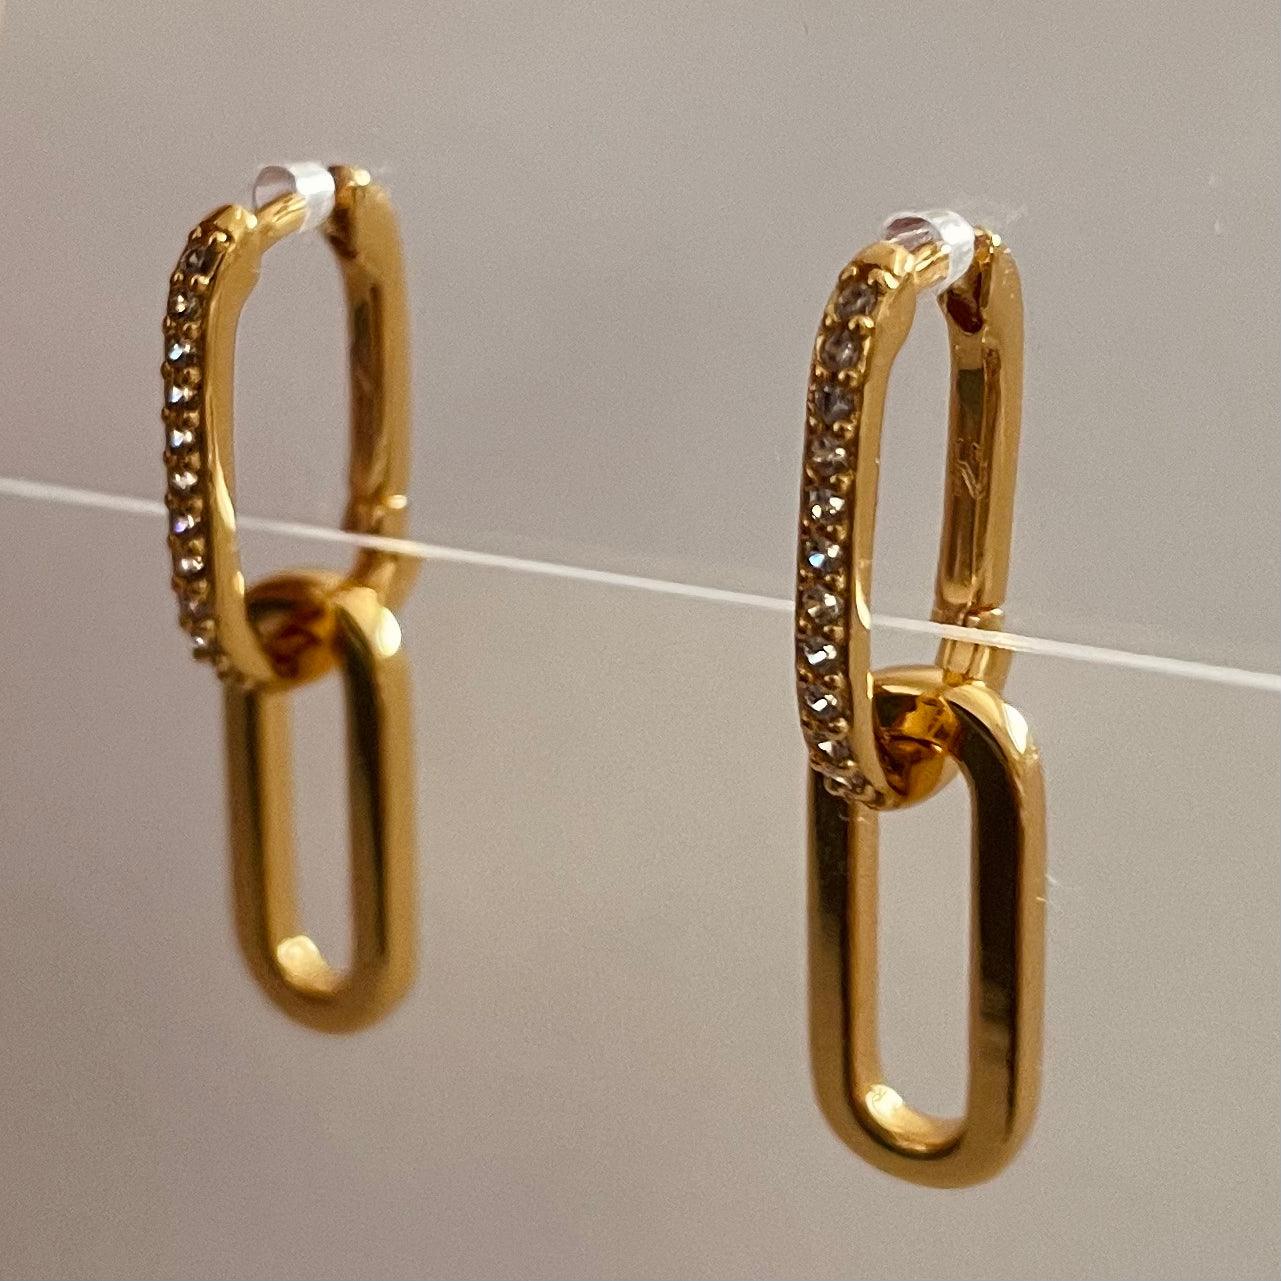 Paperclip Earrings - The Smart Minimalist